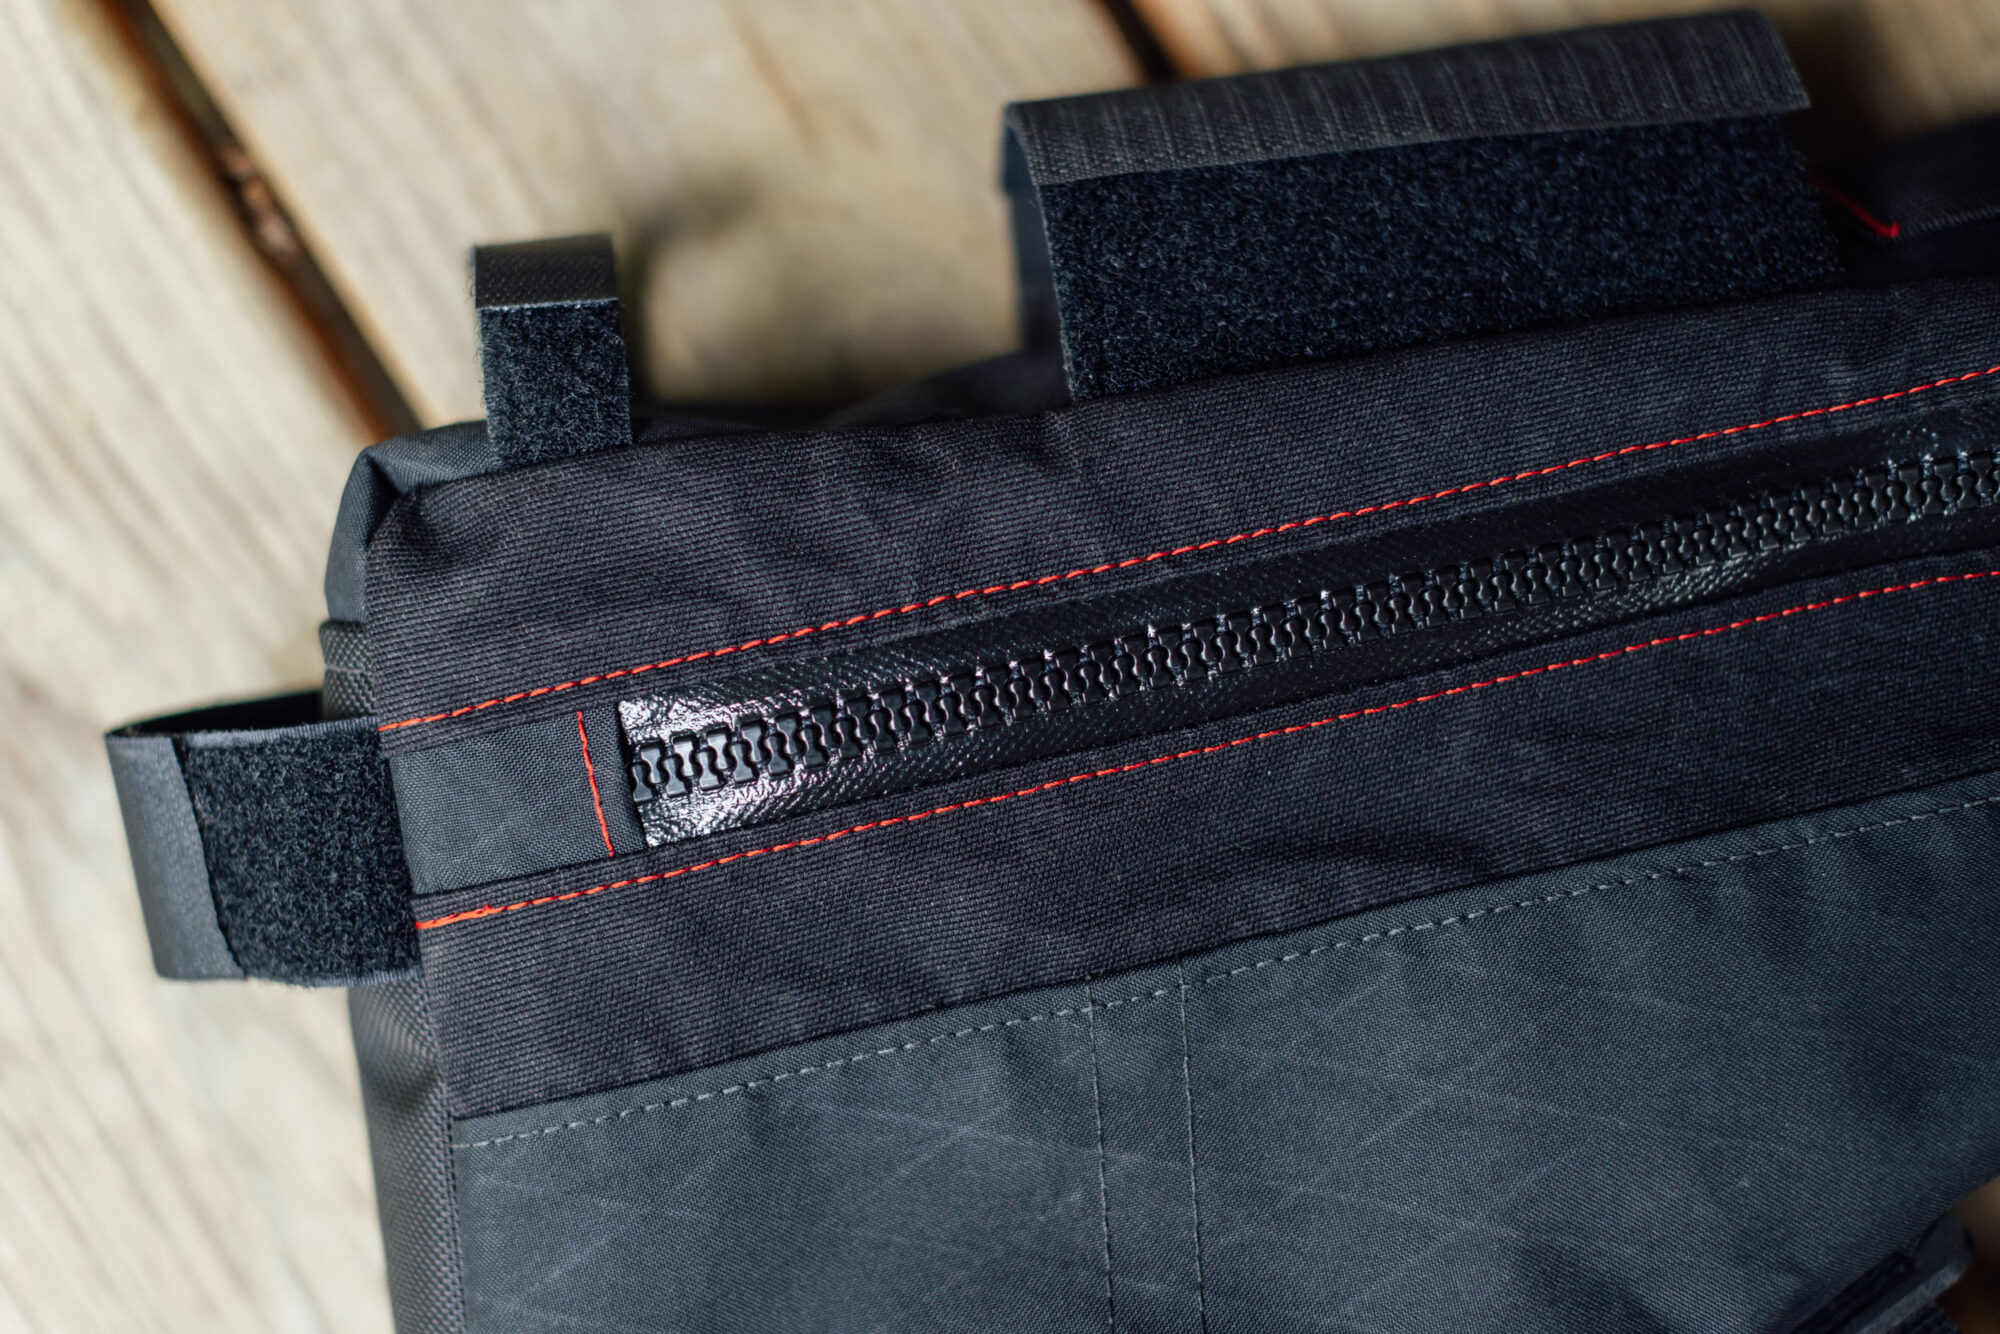 Revelate Designs Rifter Frame Bag Review